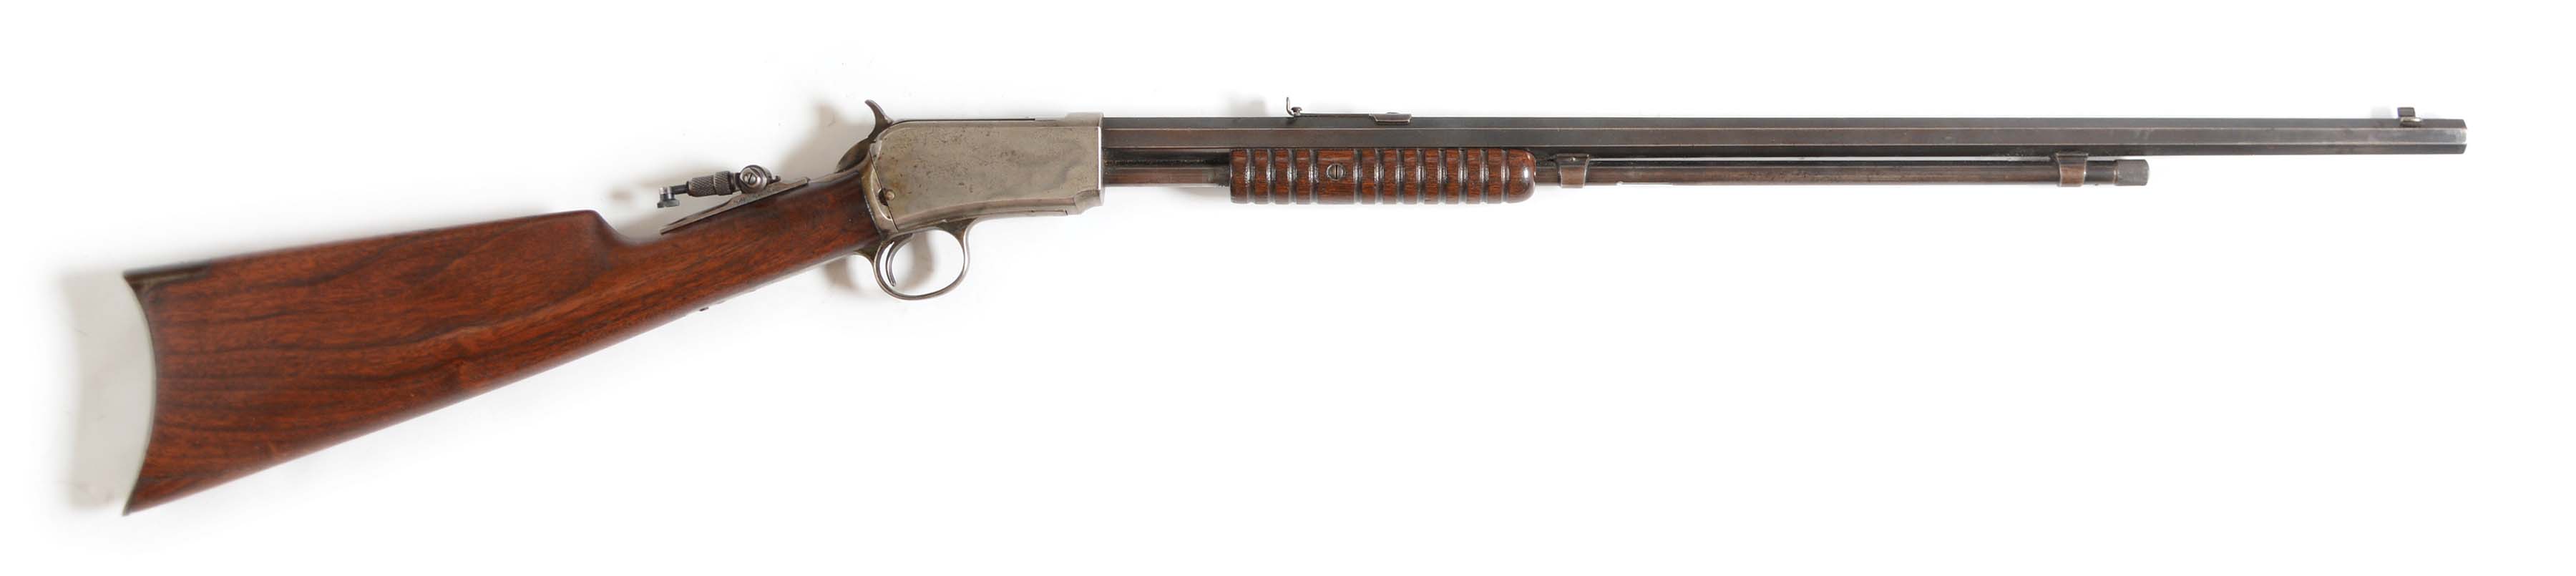 C) fine rare case colored winchester model 1890 takedown rifle. 